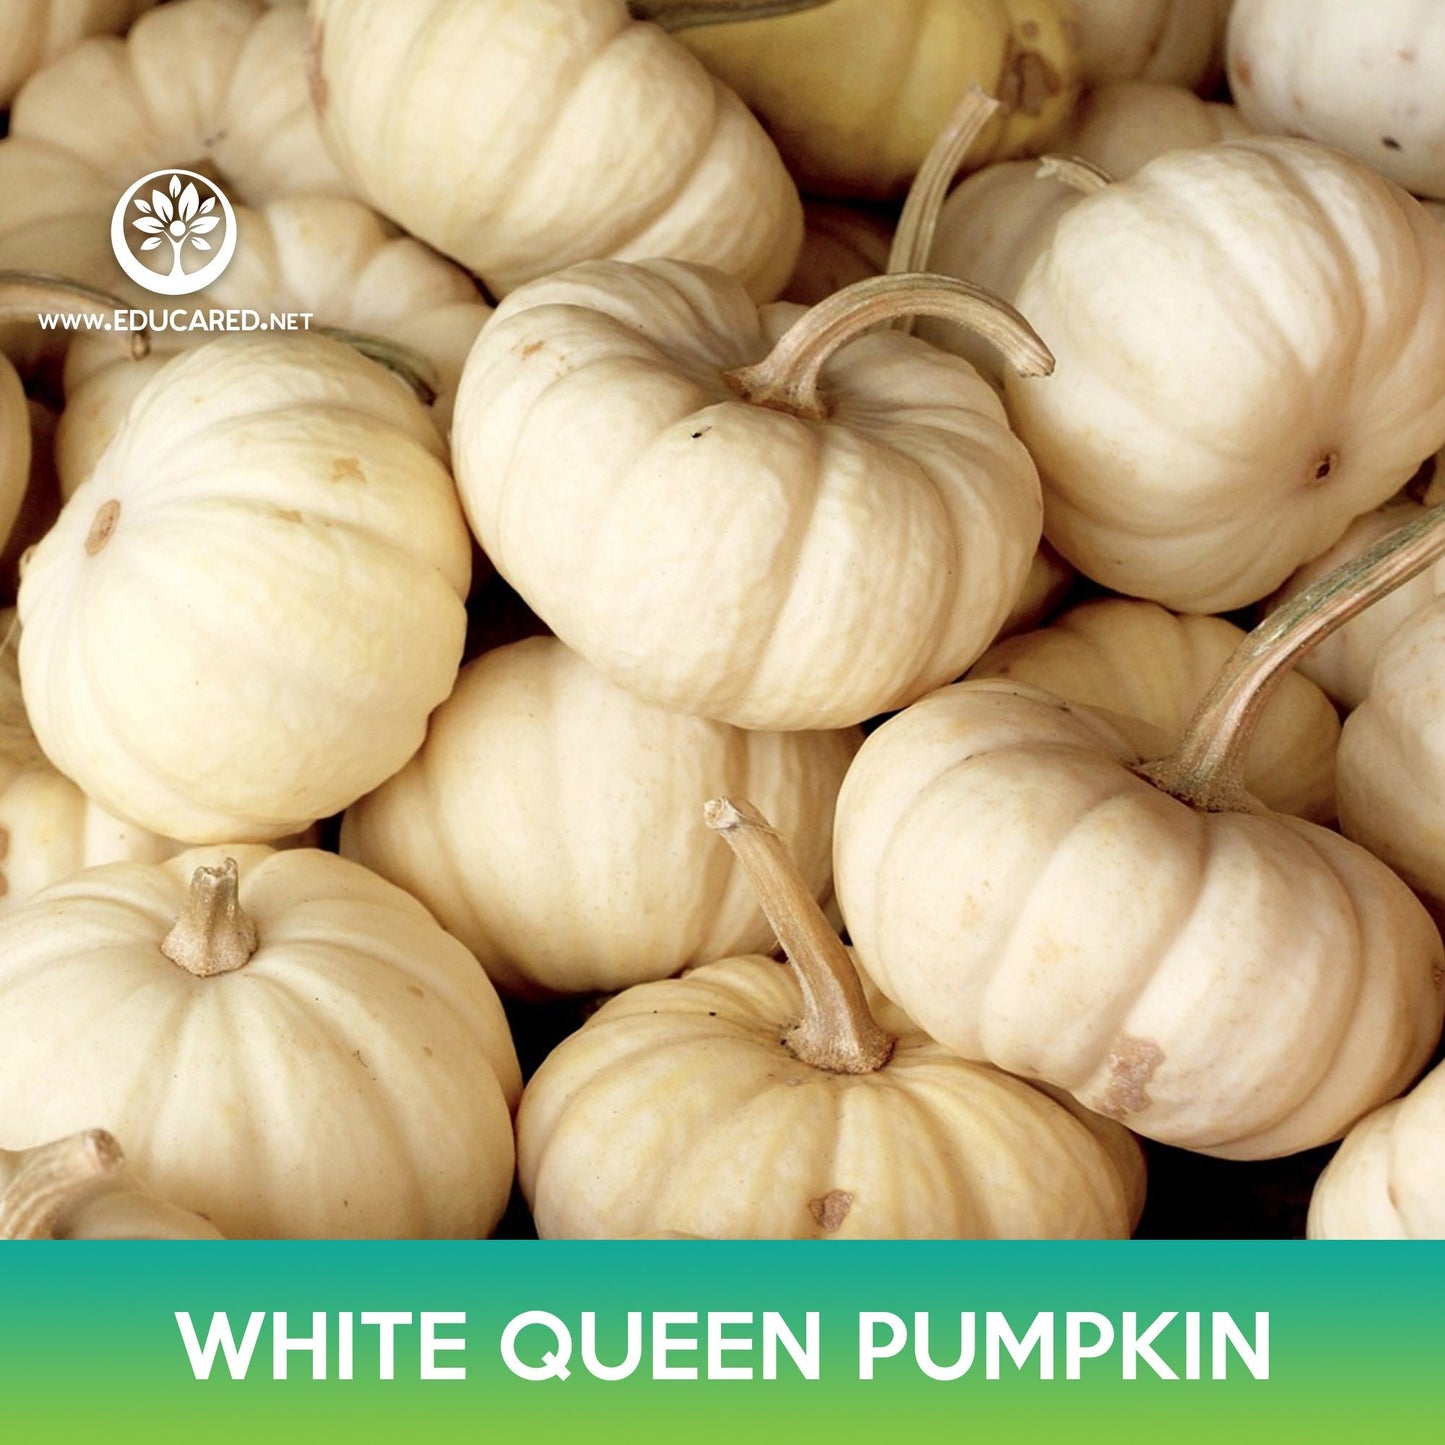 White Queen Pumpkin Seeds